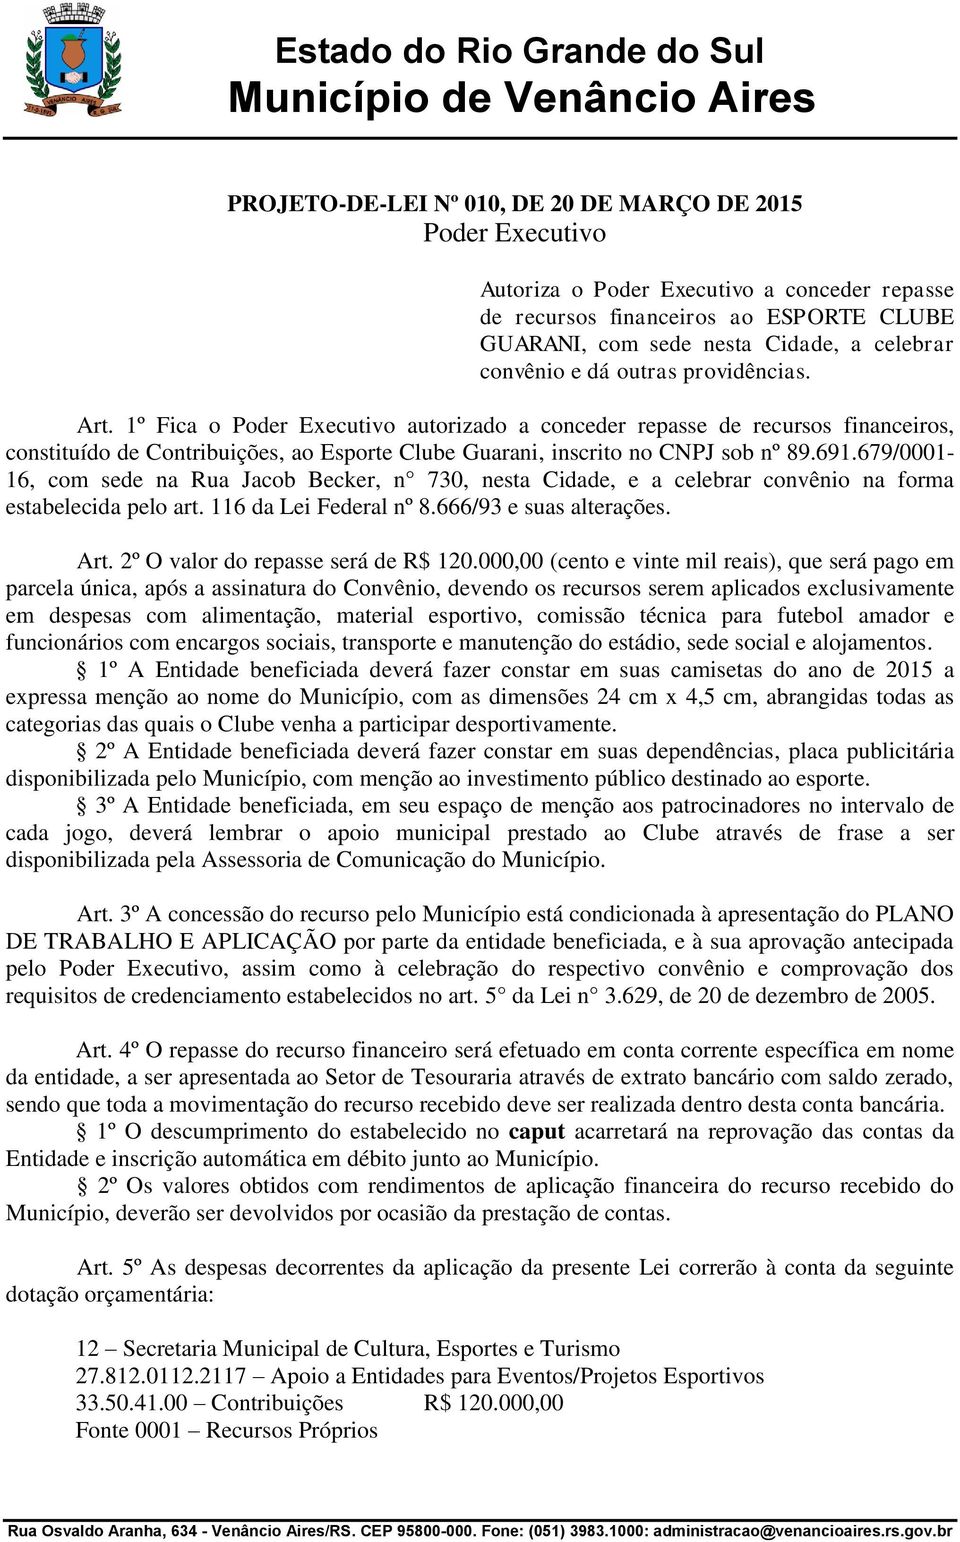 1º Fica o Poder Executivo autorizado a conceder repasse de recursos financeiros, constituído de Contribuições, ao Esporte Clube Guarani, inscrito no CNPJ sob nº 89.691.